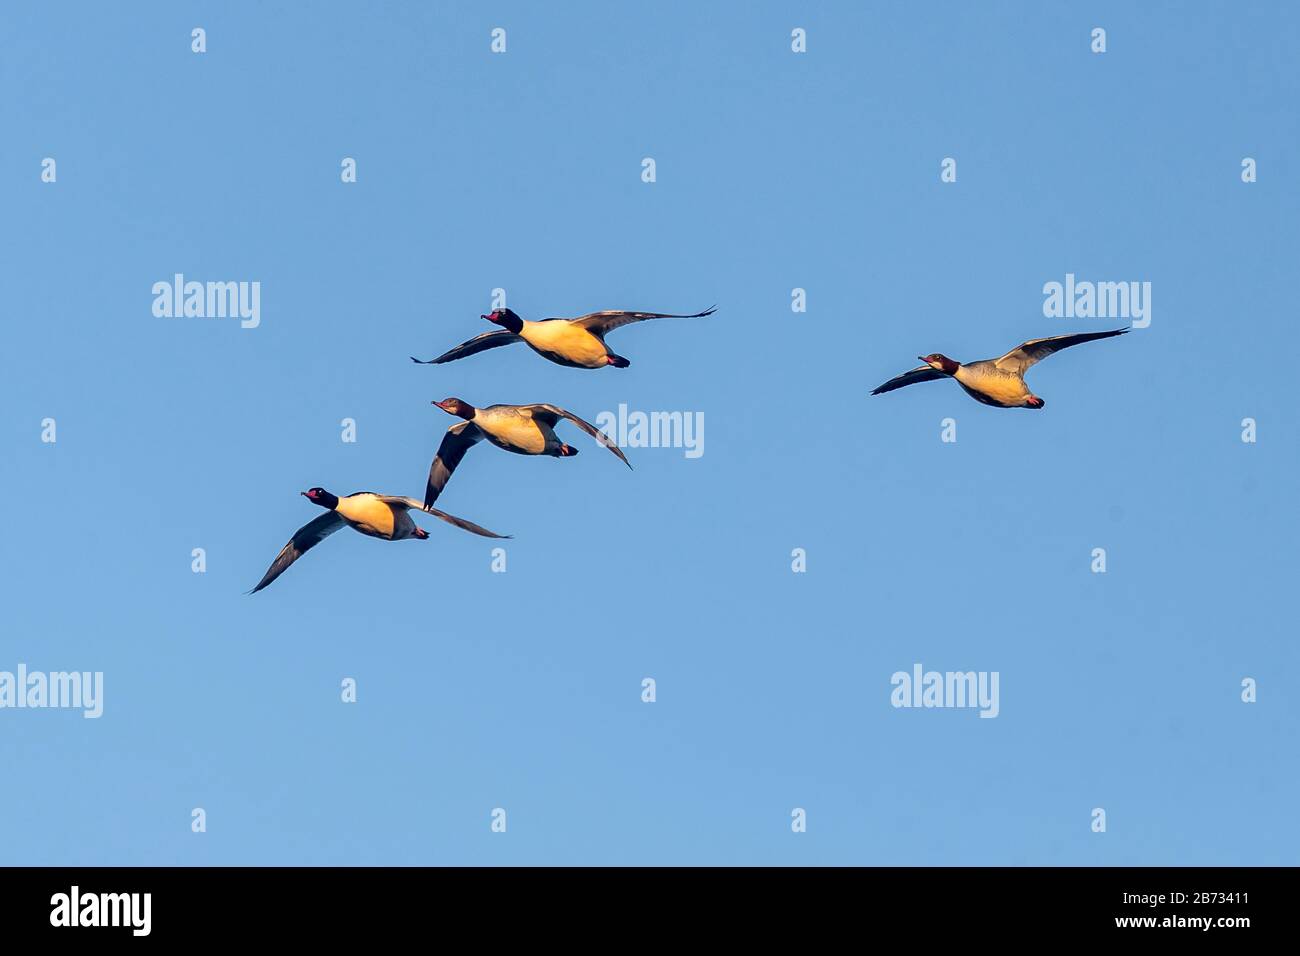 Common merganser (Mergus merganser) flying in a swarm, Germany Stock Photo